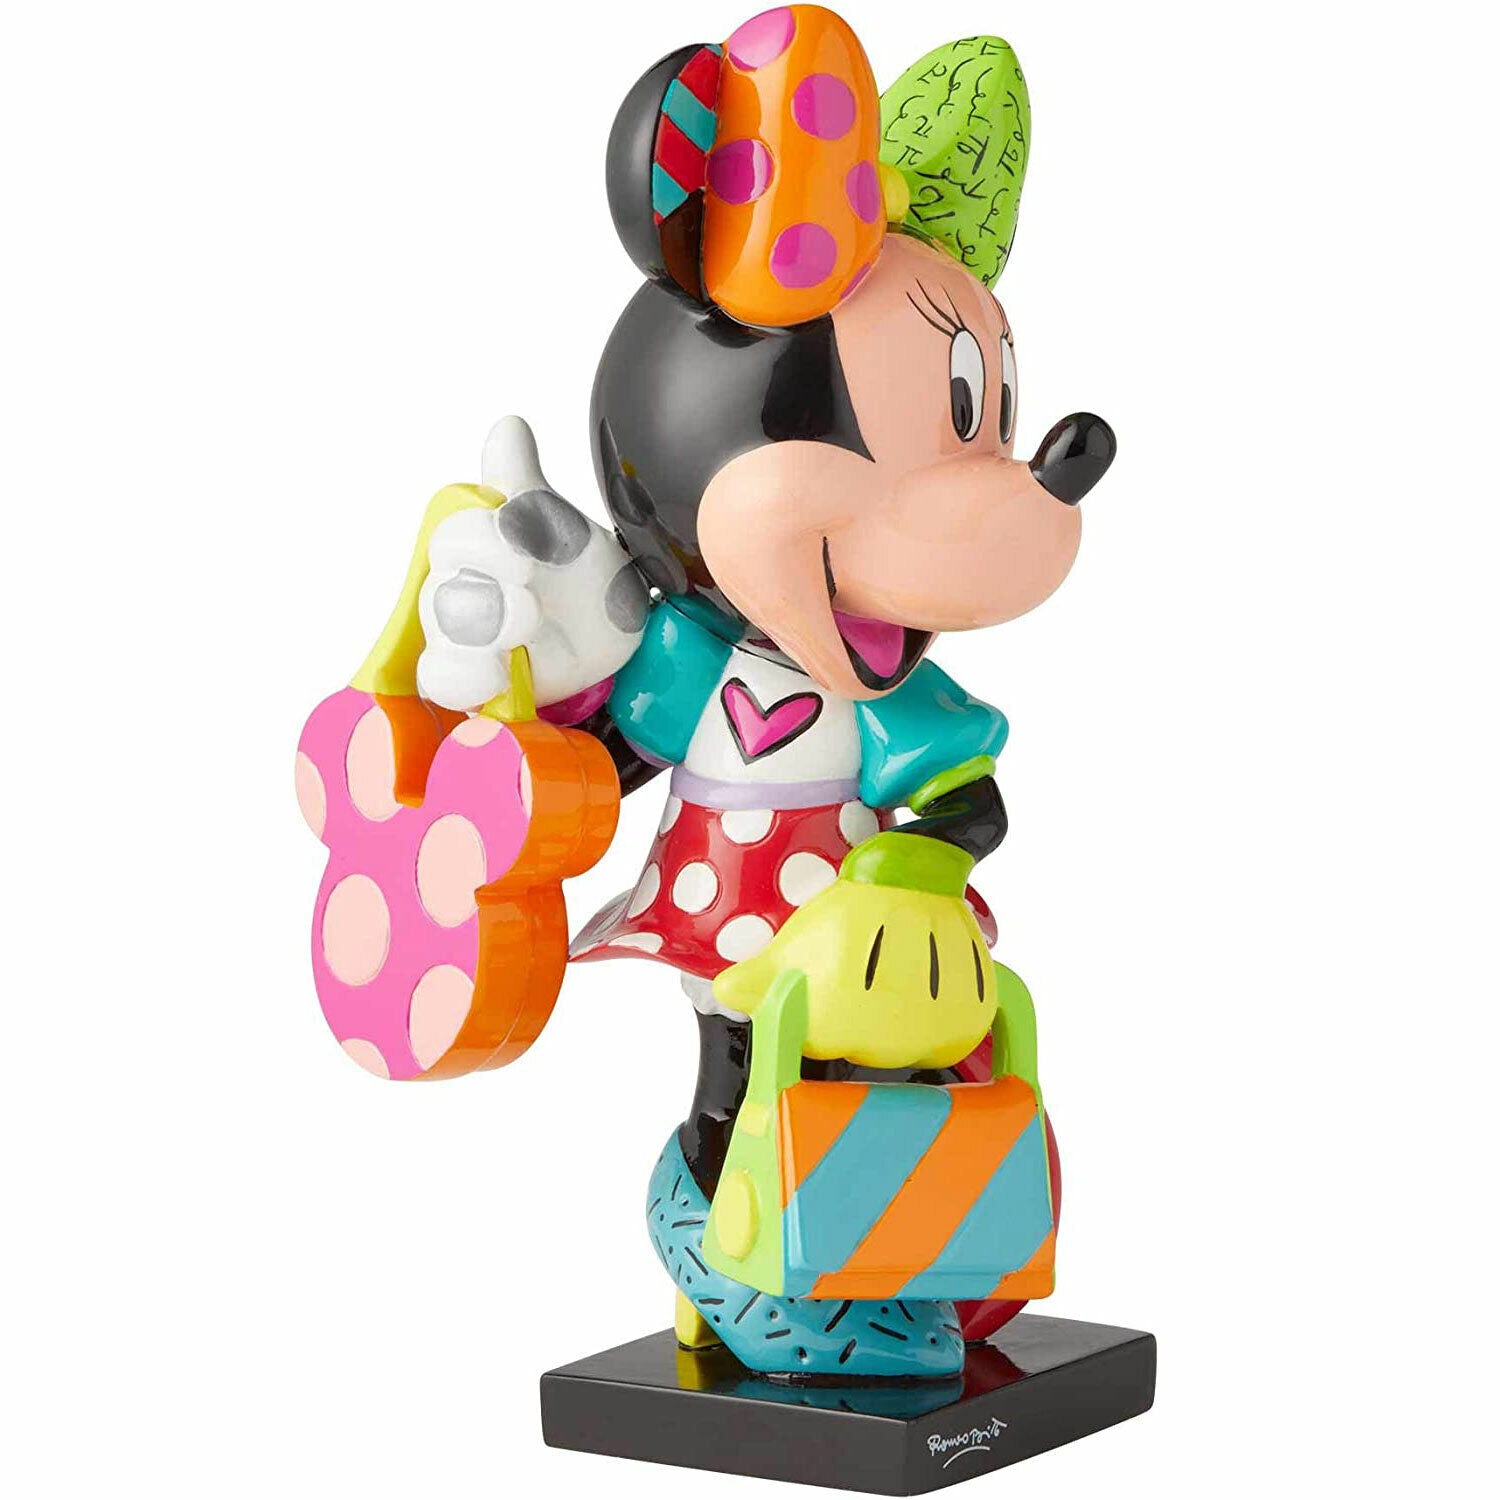 New Disney Britto Minnie Mouse Fashionista Figurine - Collectible Art